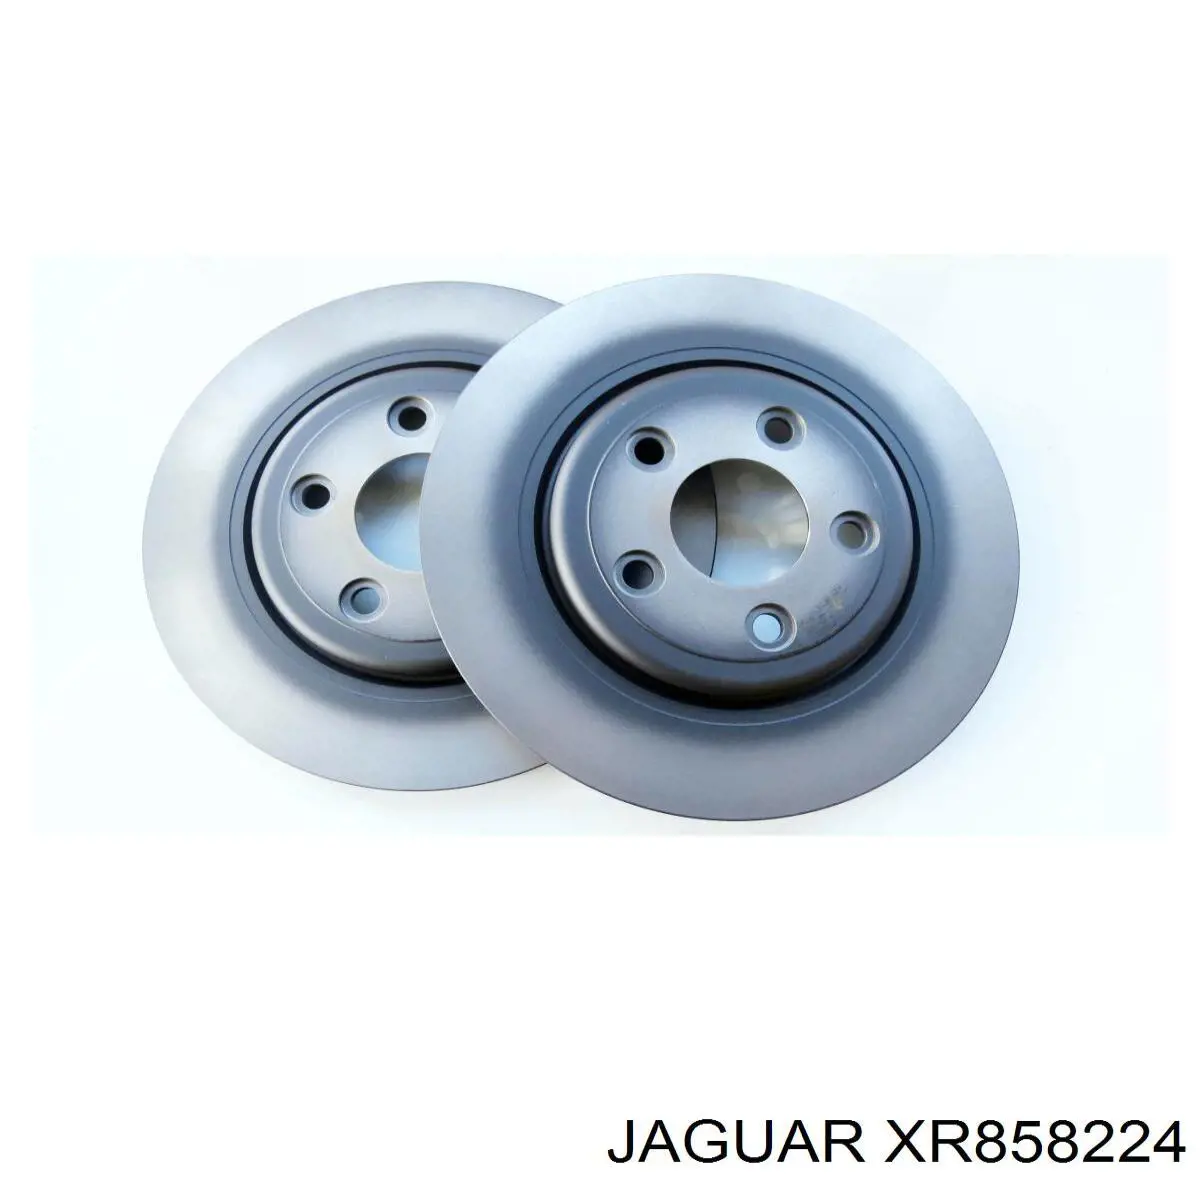 XR858224 Jaguar disco de freno trasero